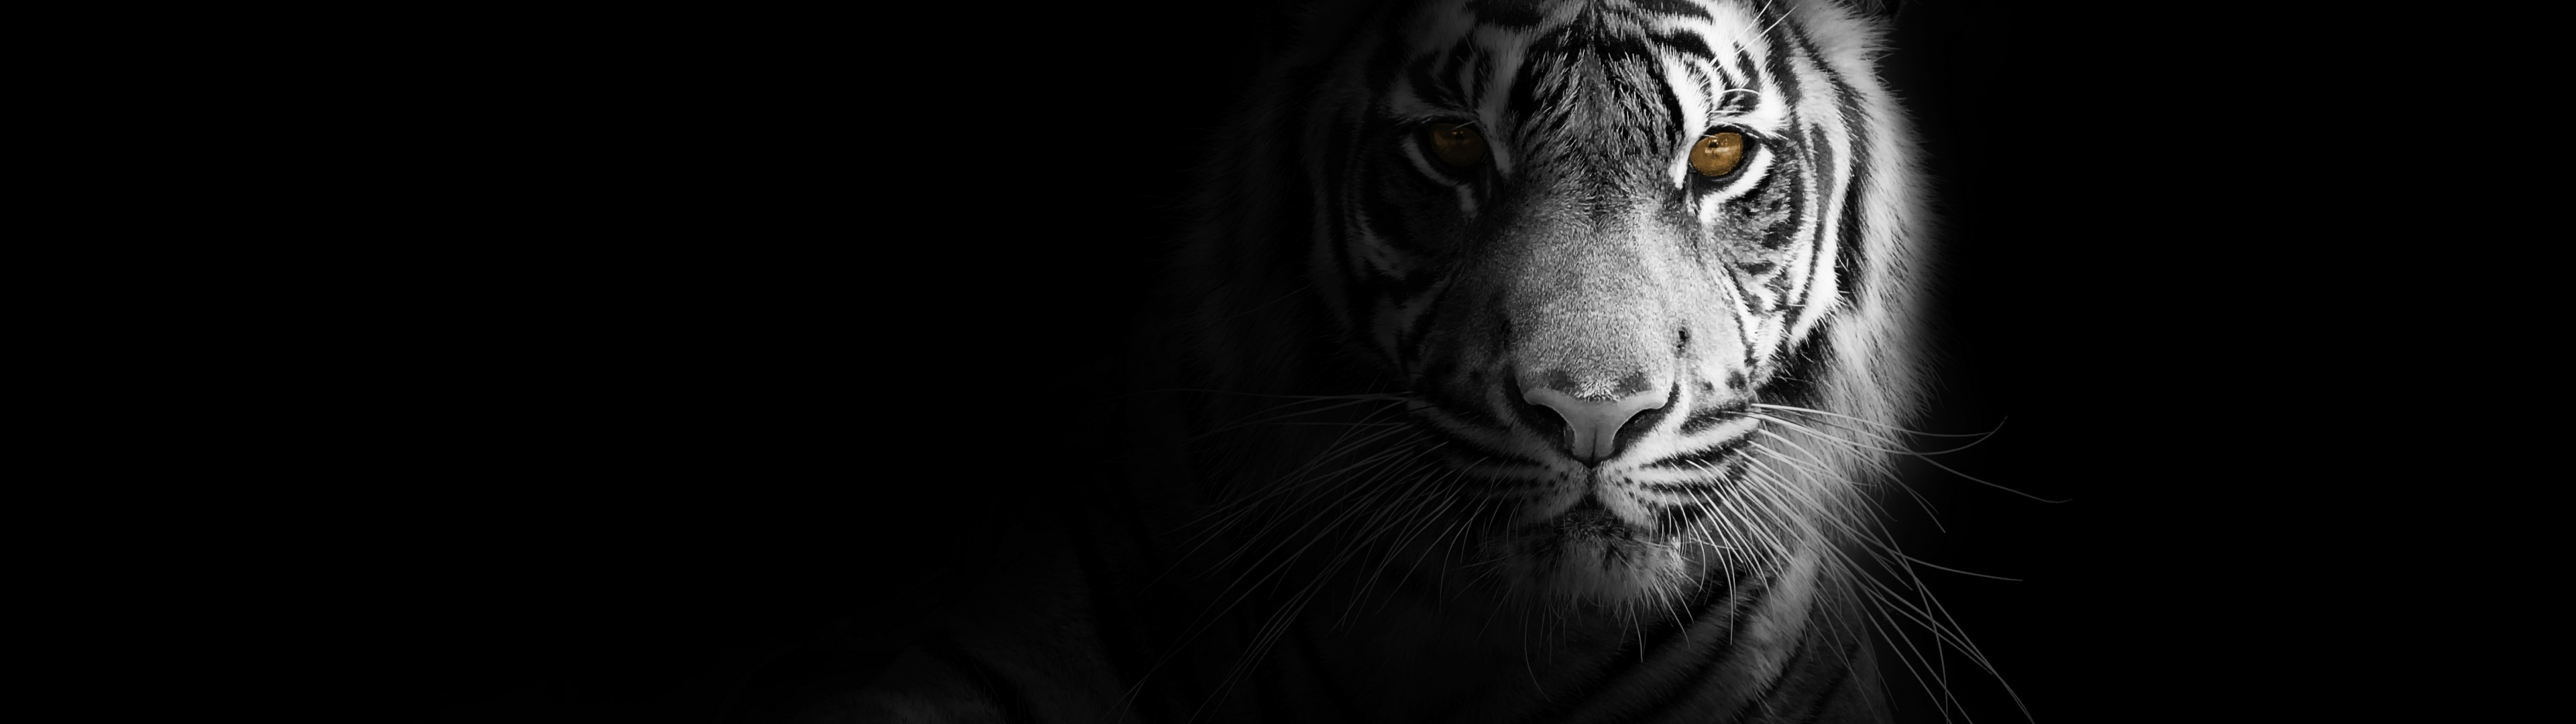 White tiger Wallpaper 4K, Bengal Tiger, Black background, 5K, Animals